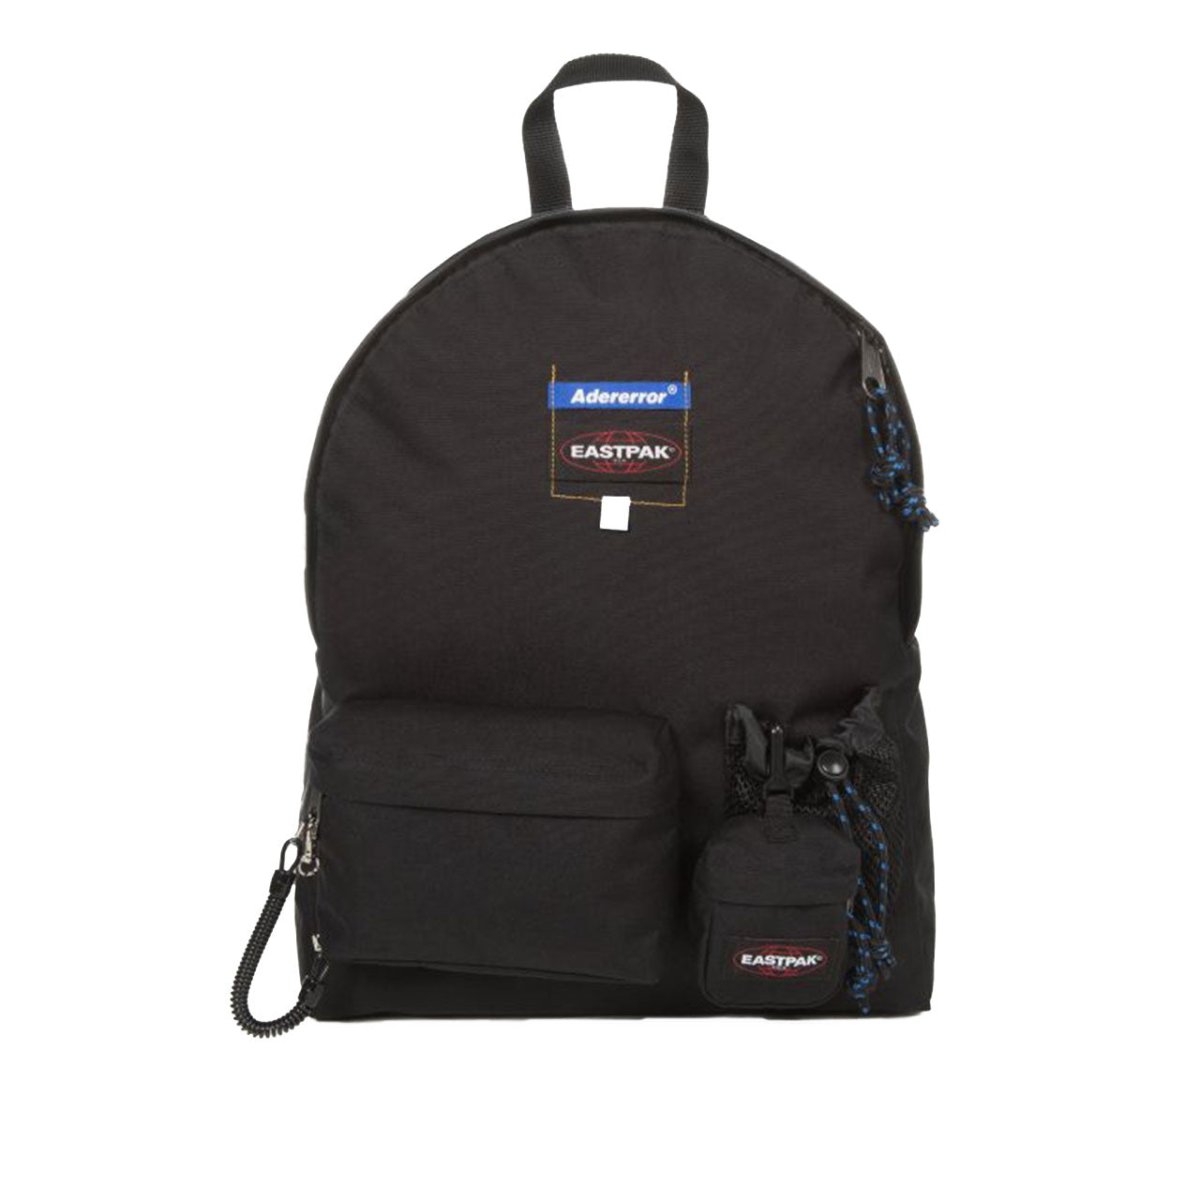 Eastpak x Ader Error Padded Backpack (Schwarz)  - Allike Store